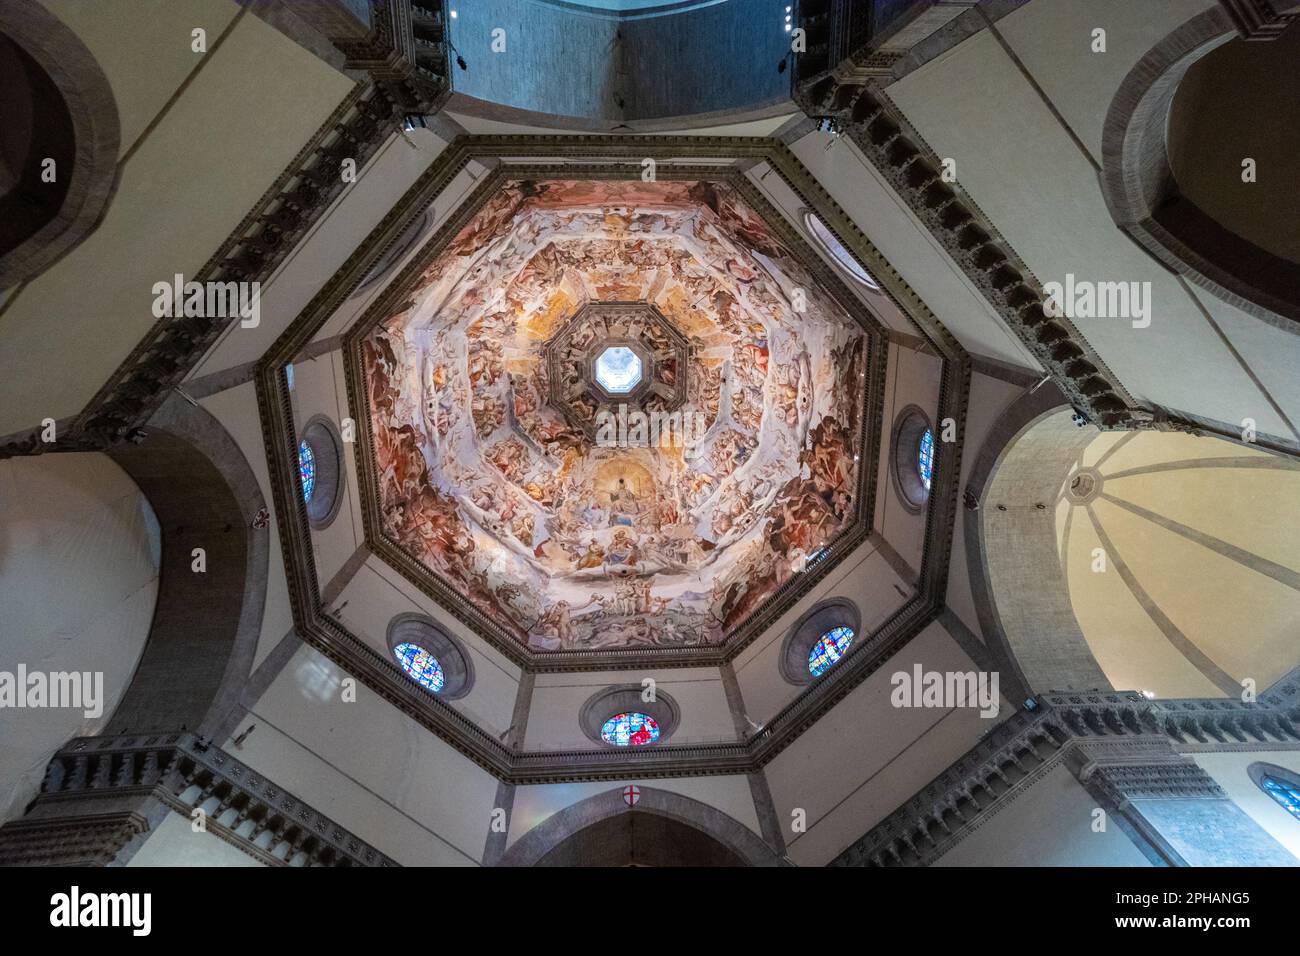 Interno della cupola di Brunellschi al Duomo di Firenze, dipinto da Vasari e Federico Zuccaro - Giudizio universale. Foto Stock